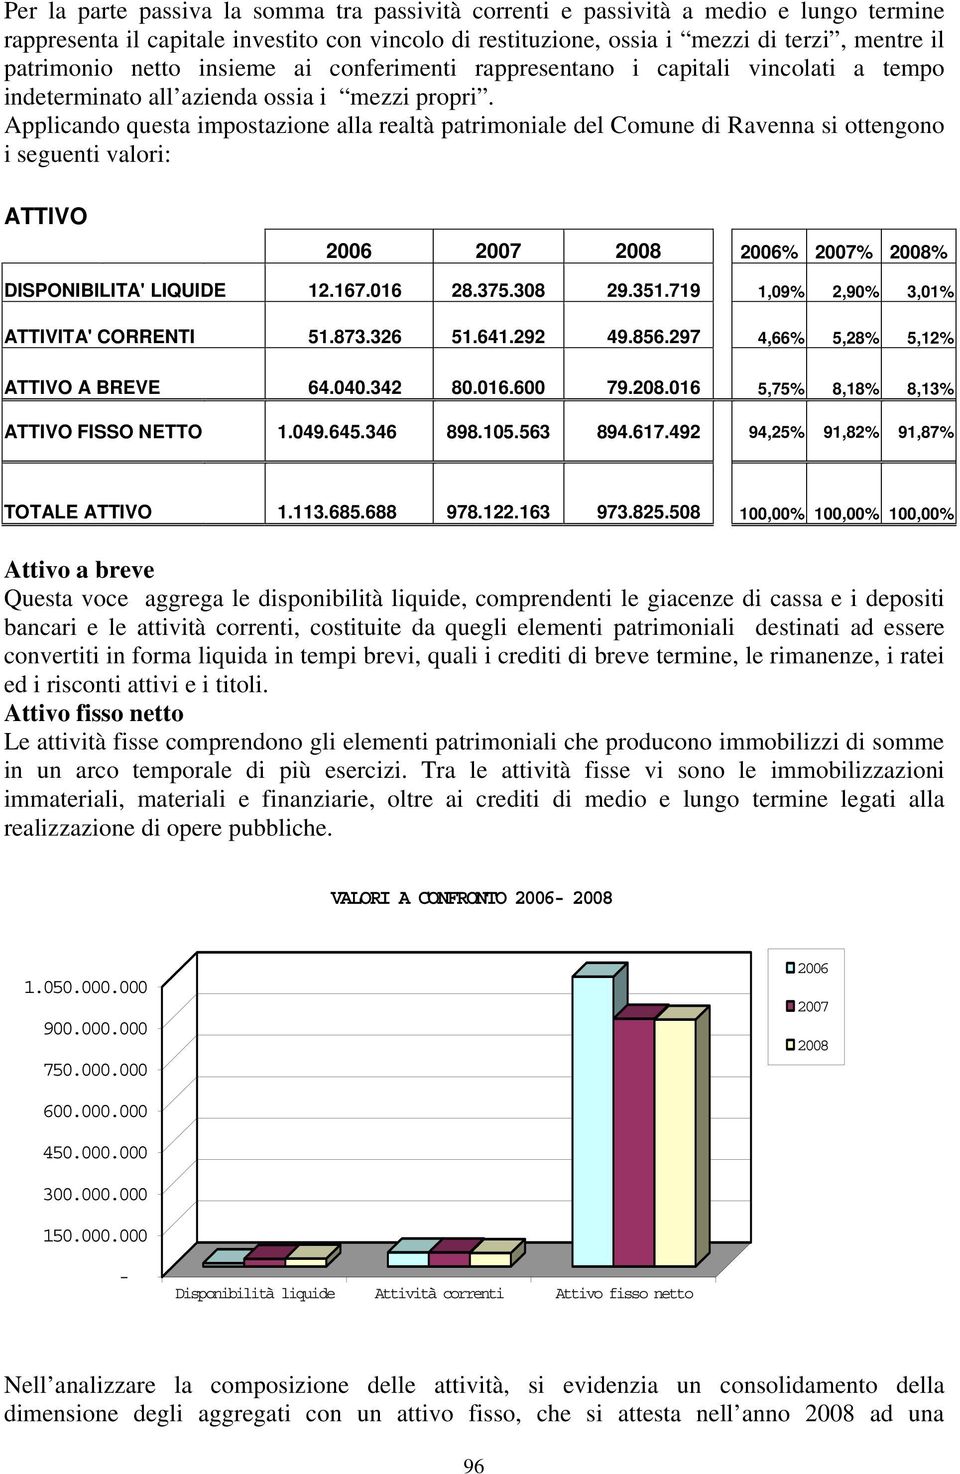 Applicando questa impostazione alla realtà patrimoniale del Comune di Ravenna si ottengono i seguenti valori: ATTIVO 2006% 2007% 2008% DISPONIBILITA' LIQUIDE 12.167.016 28.375.308 29.351.